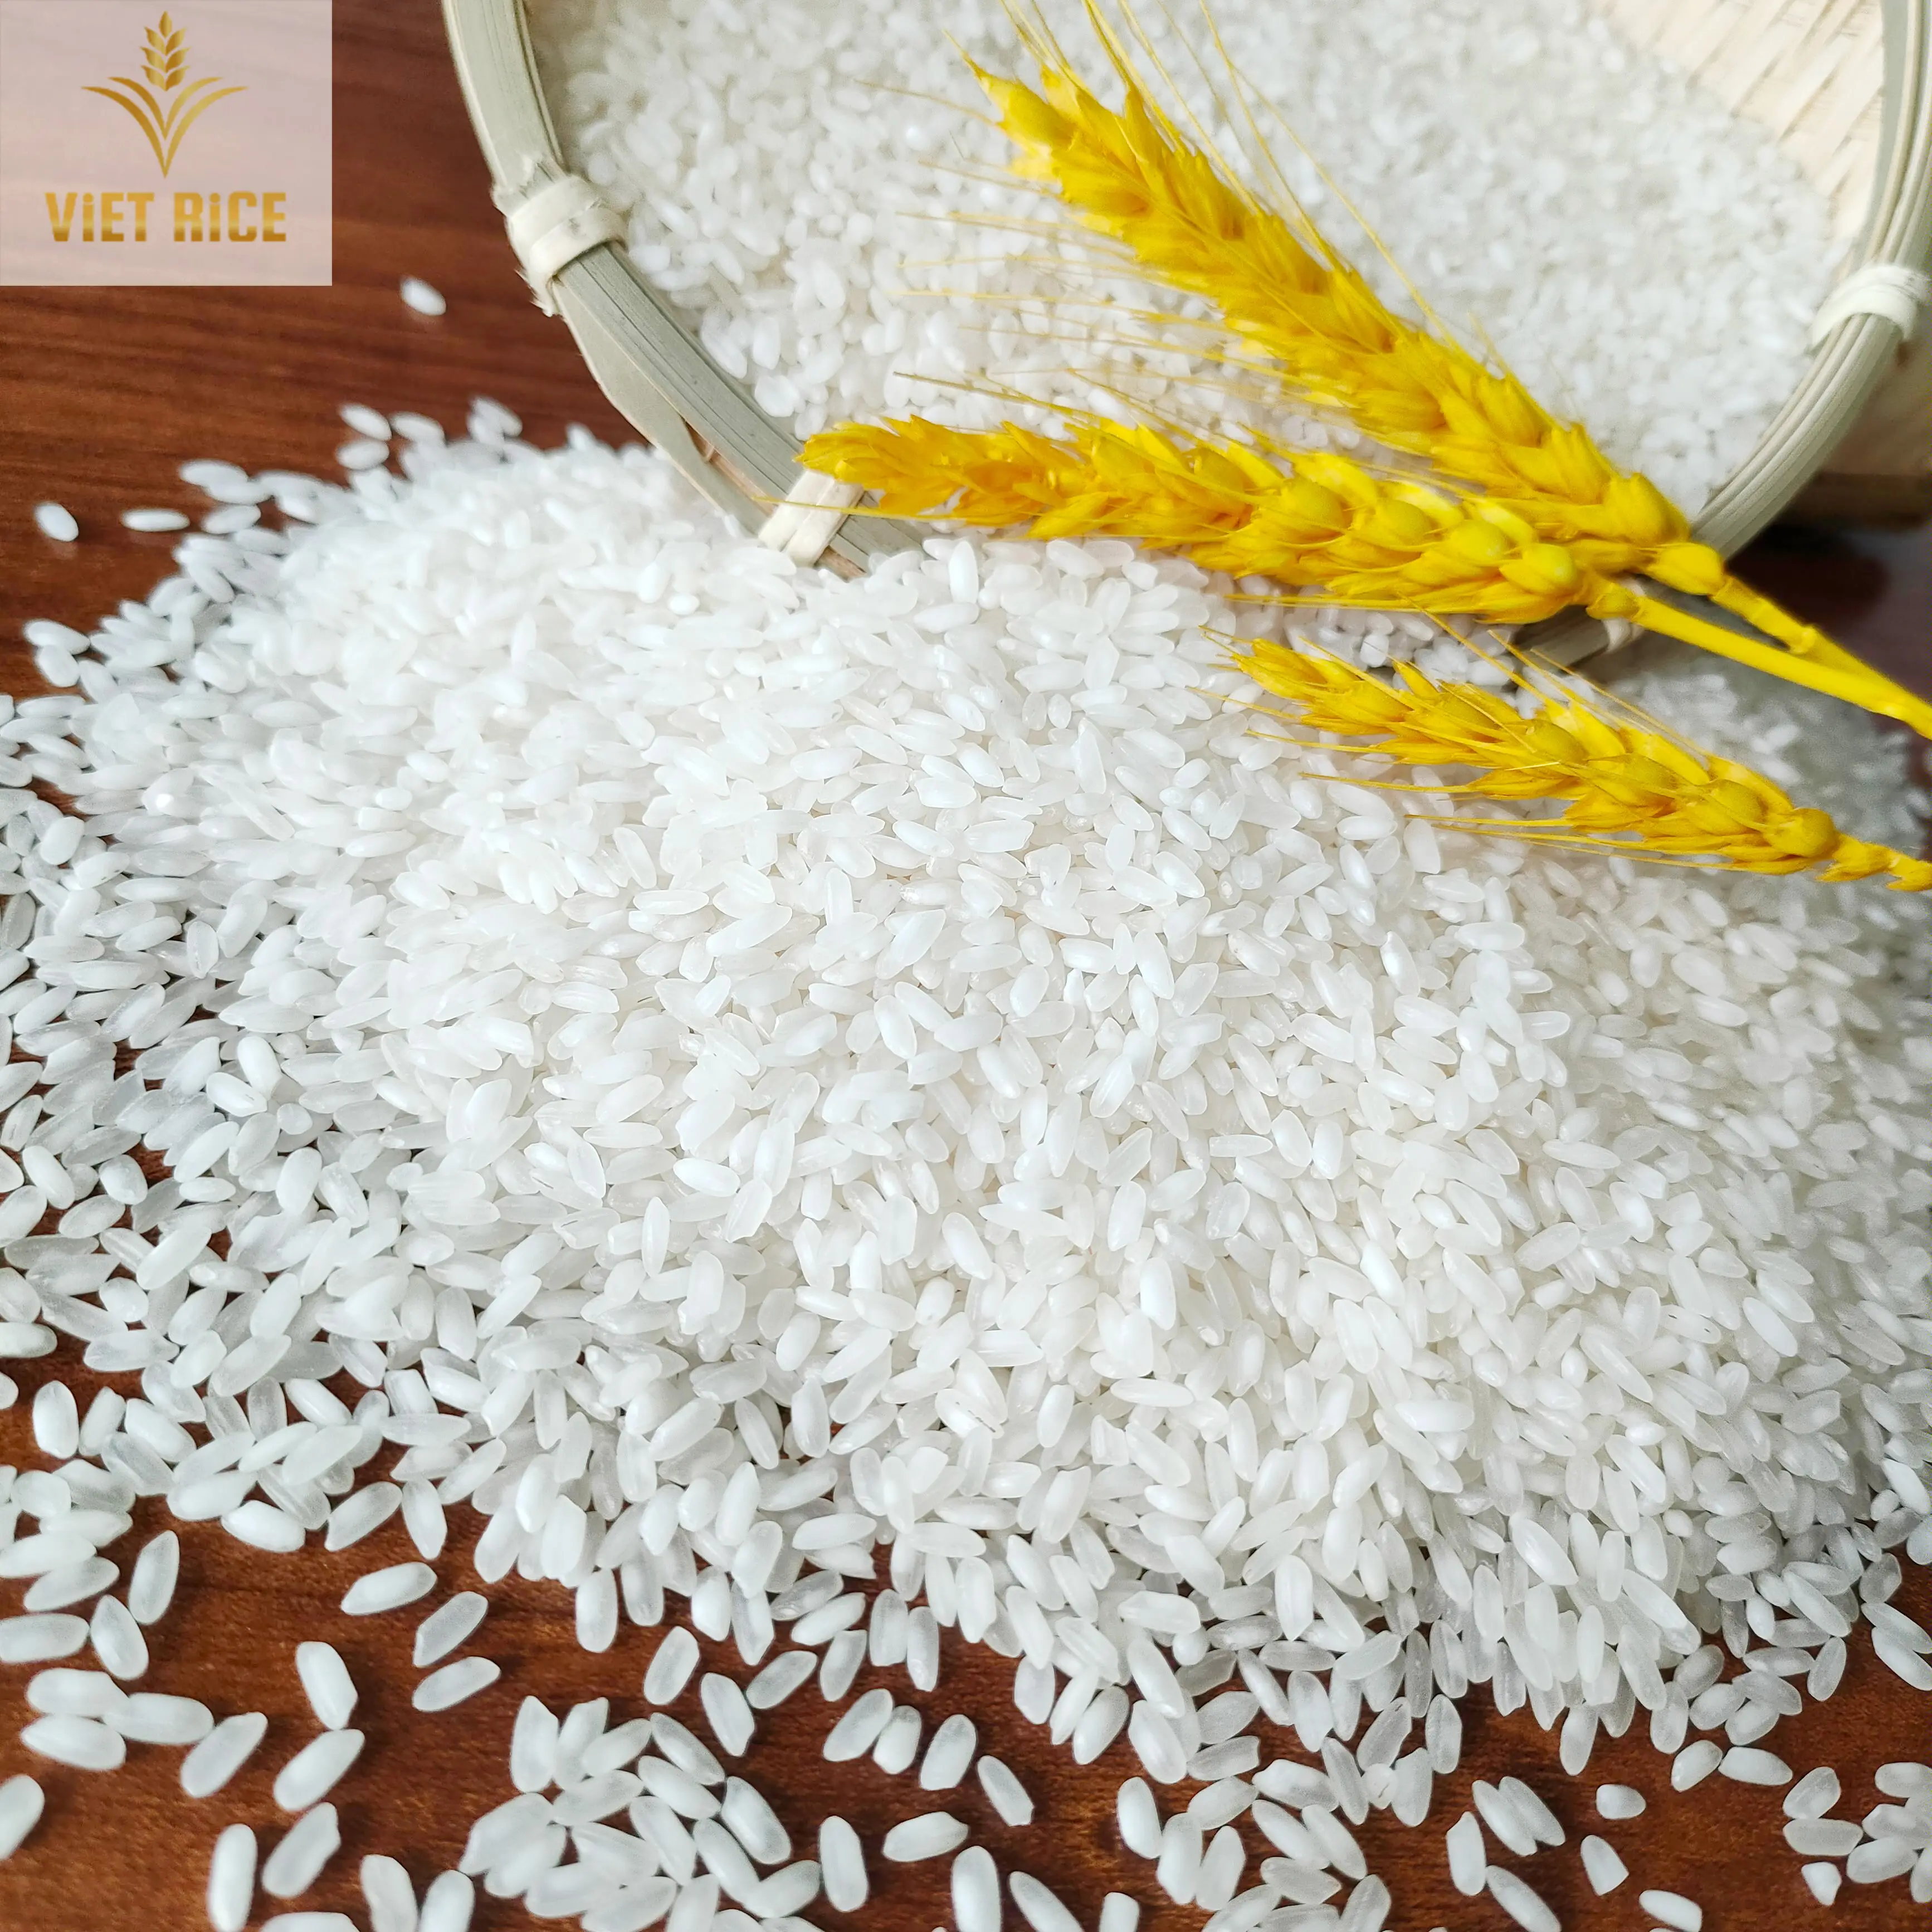 Gạo trắng hạt ngắn giá rẻ-5% gạo vừa bị hỏng cung cấp chất lượng cao, khối lượng lớn từ một nhà xuất khẩu có uy tín của Việt Nam